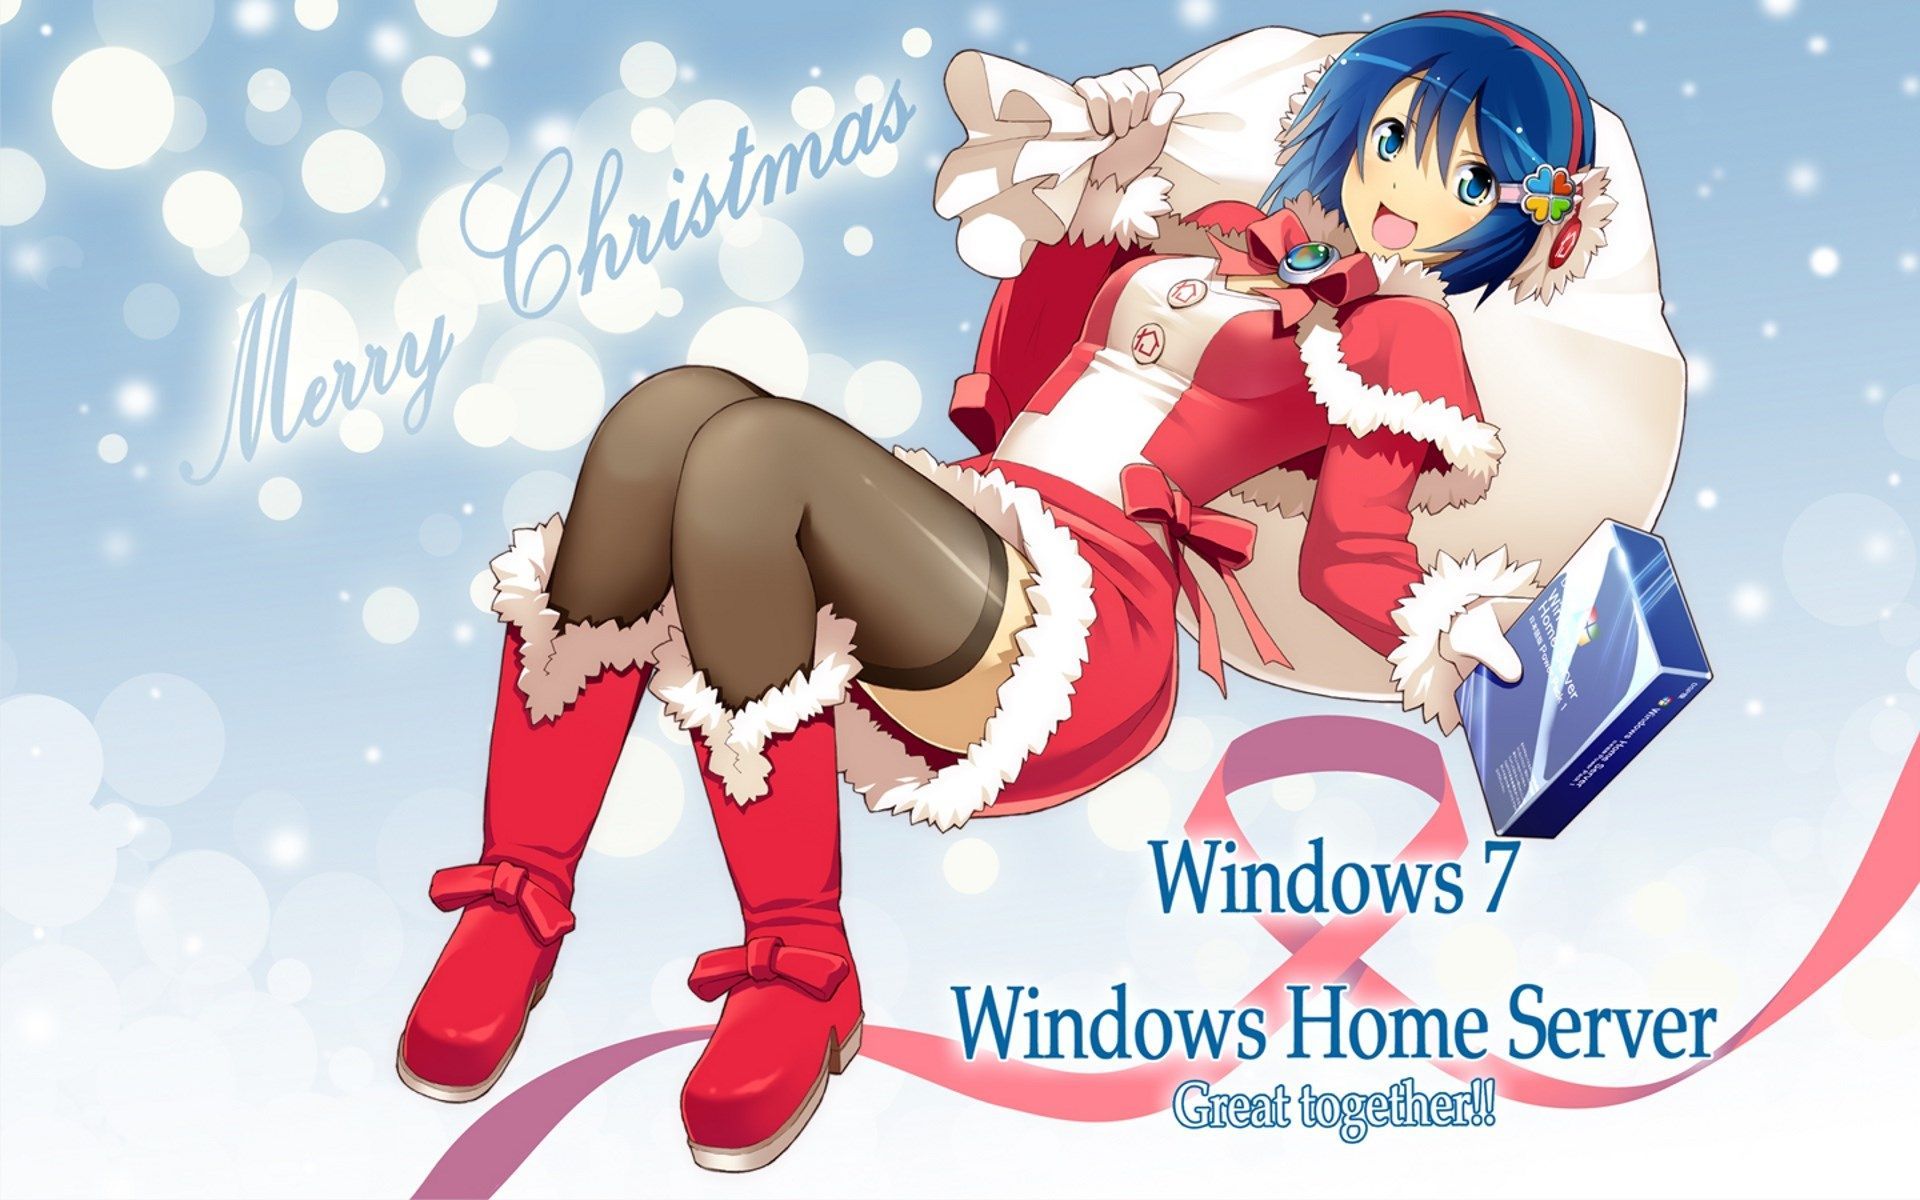 Image for Desktop: os tan. Christmas wallpaper hd, Anime, Christmas wallpaper